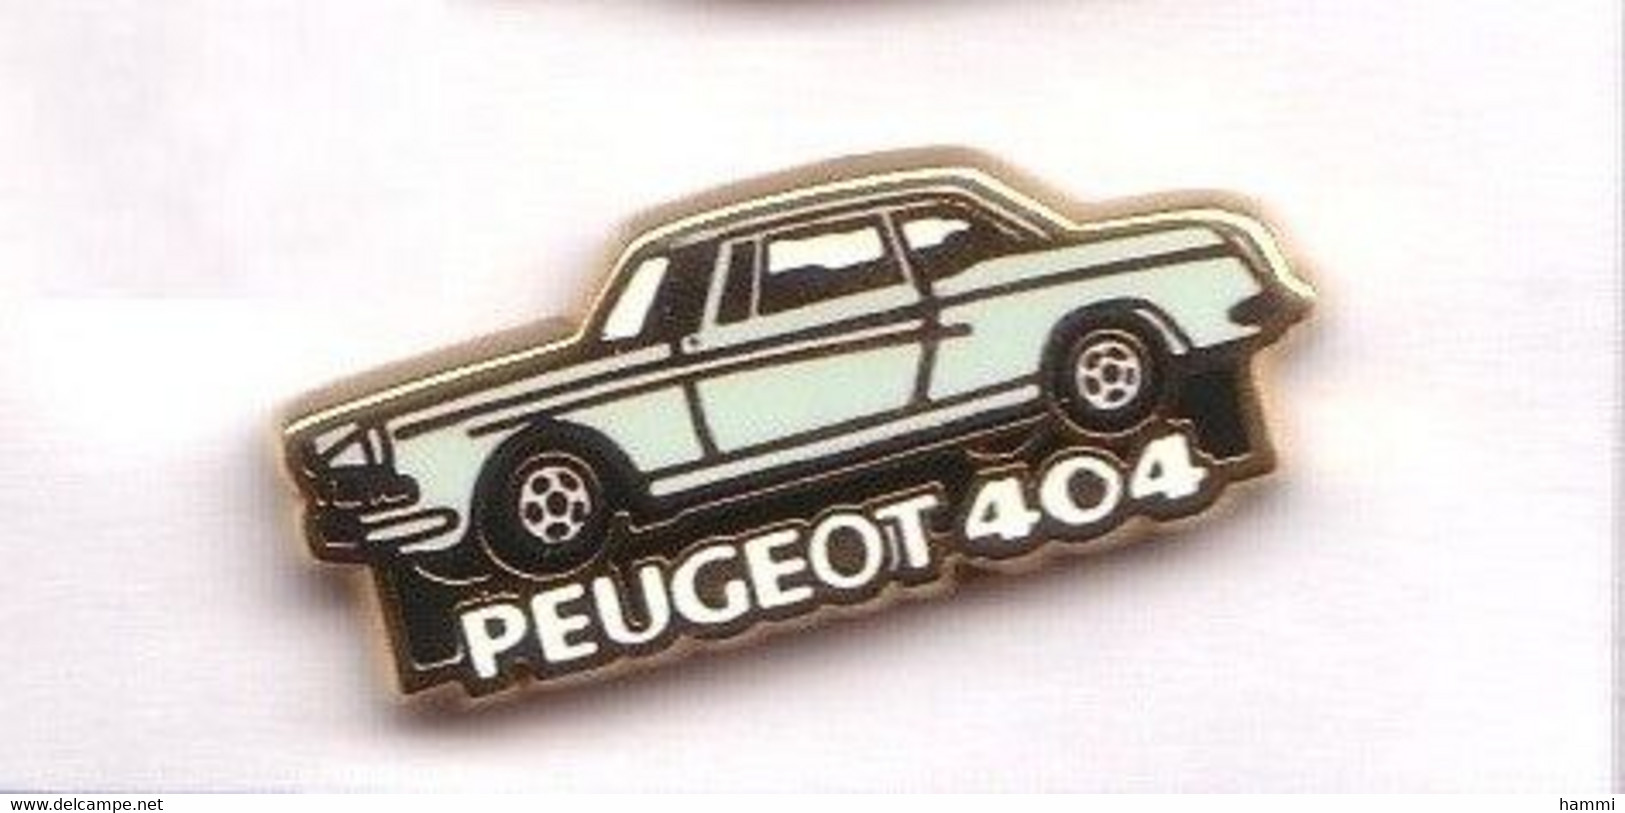 V100 PEUGEOT 404   Signé HELIUM Paris Achat Immédiat - Peugeot